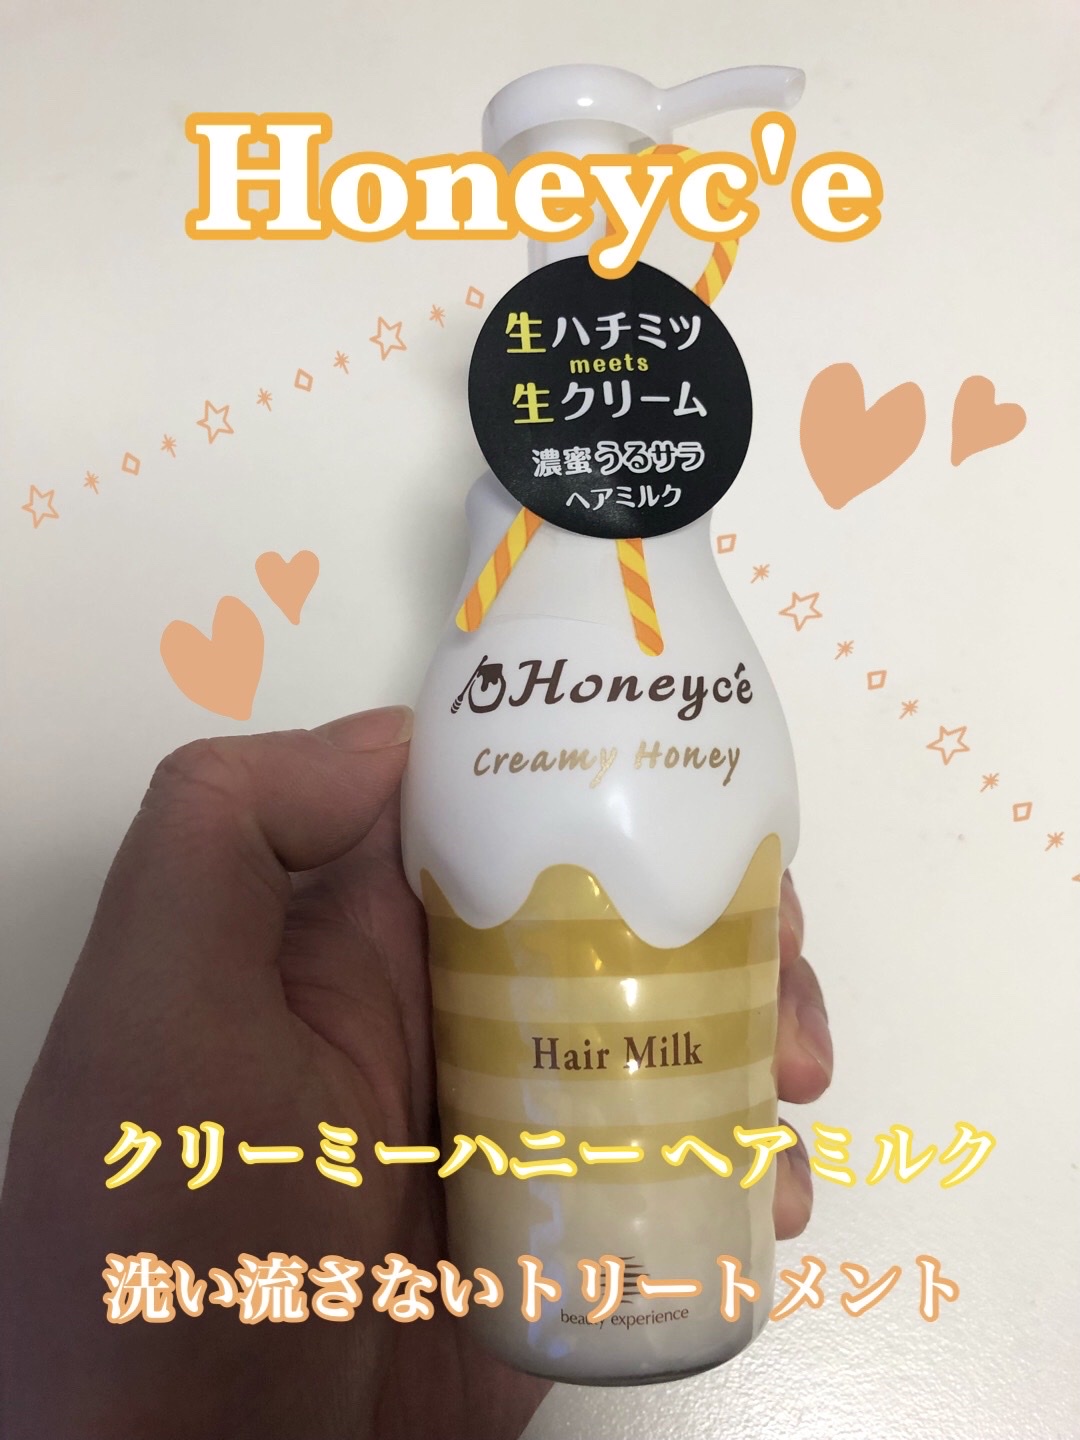 Honeyce'(ハニーチェ) / クリーミーハニー ヘアミルクの公式商品情報